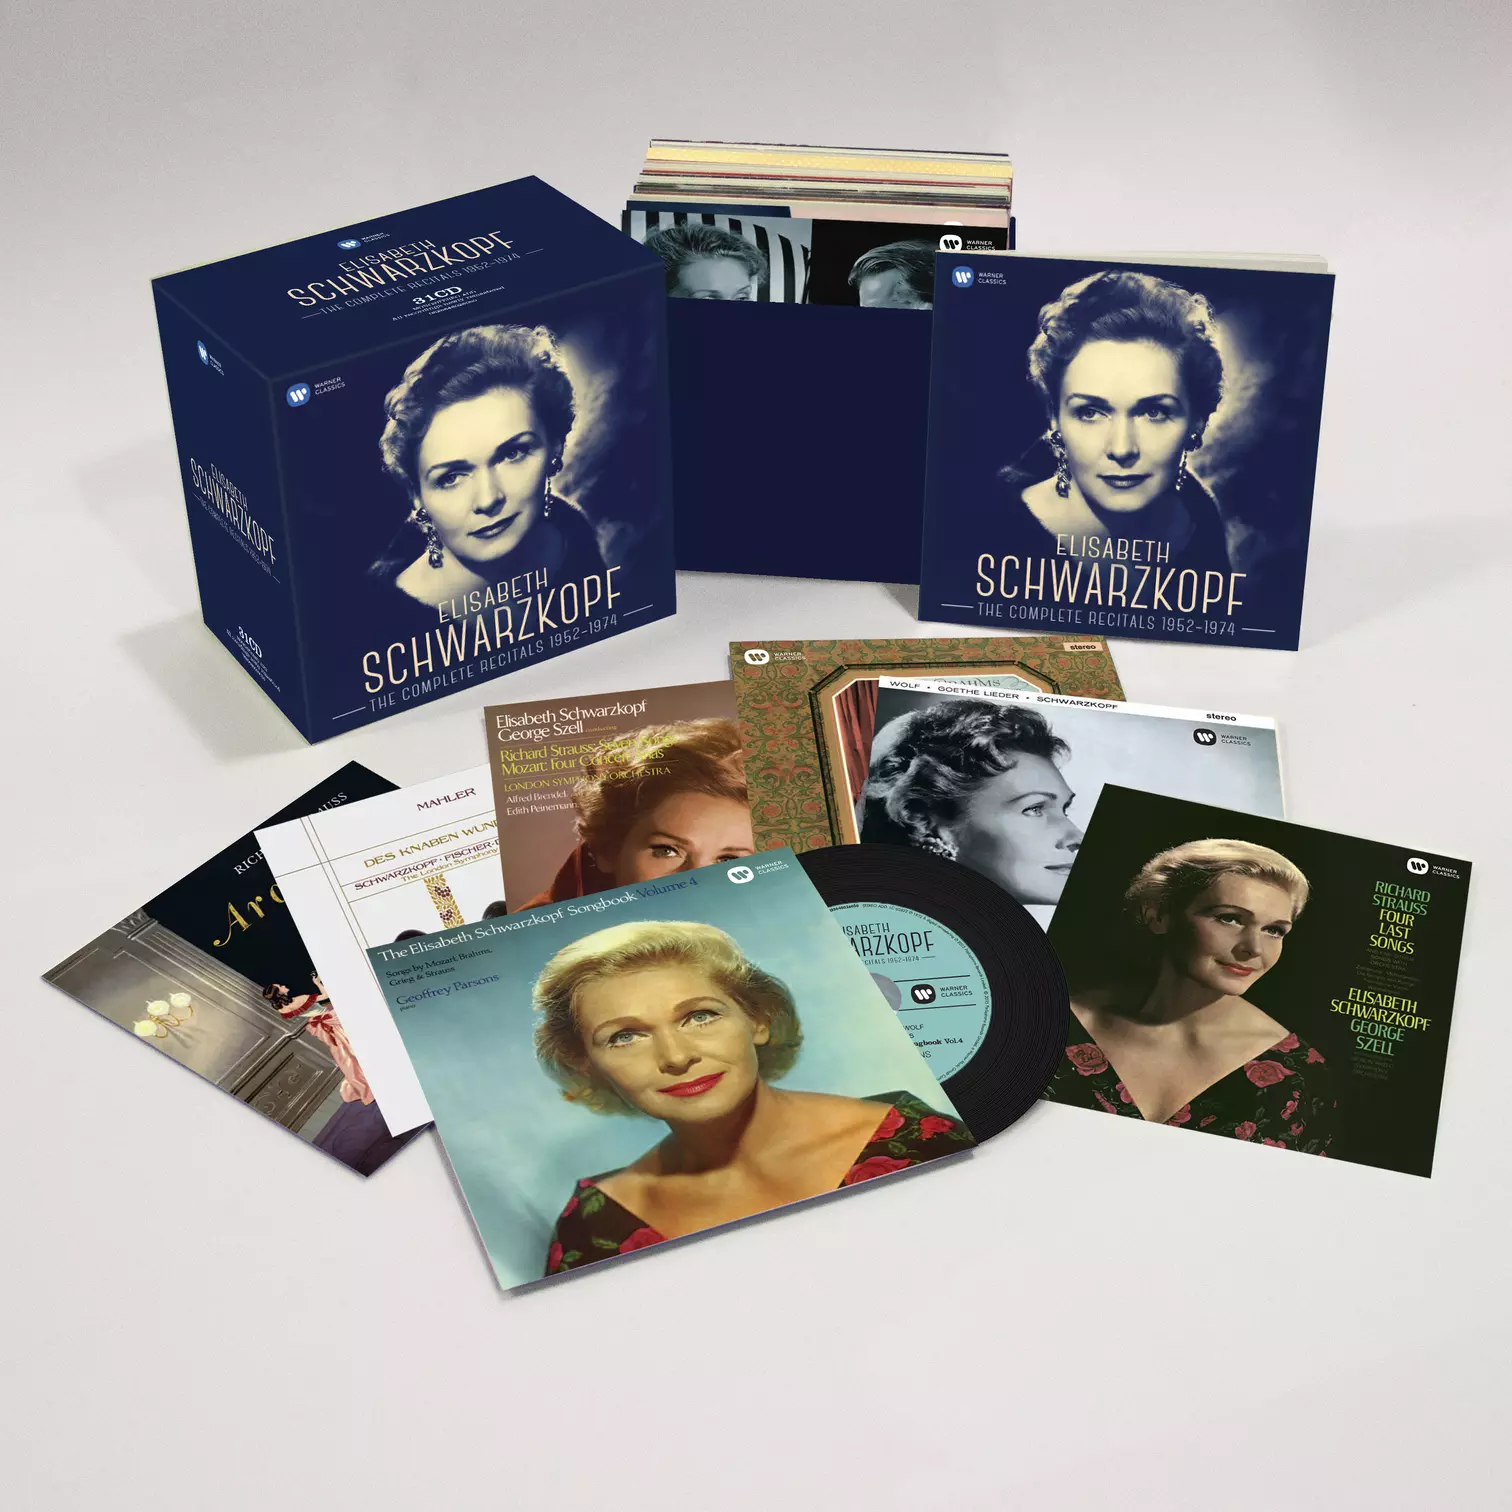 Elisabeth Schwarzkopf - The Complete Recitals 1952-1974 (2015 Remasters)